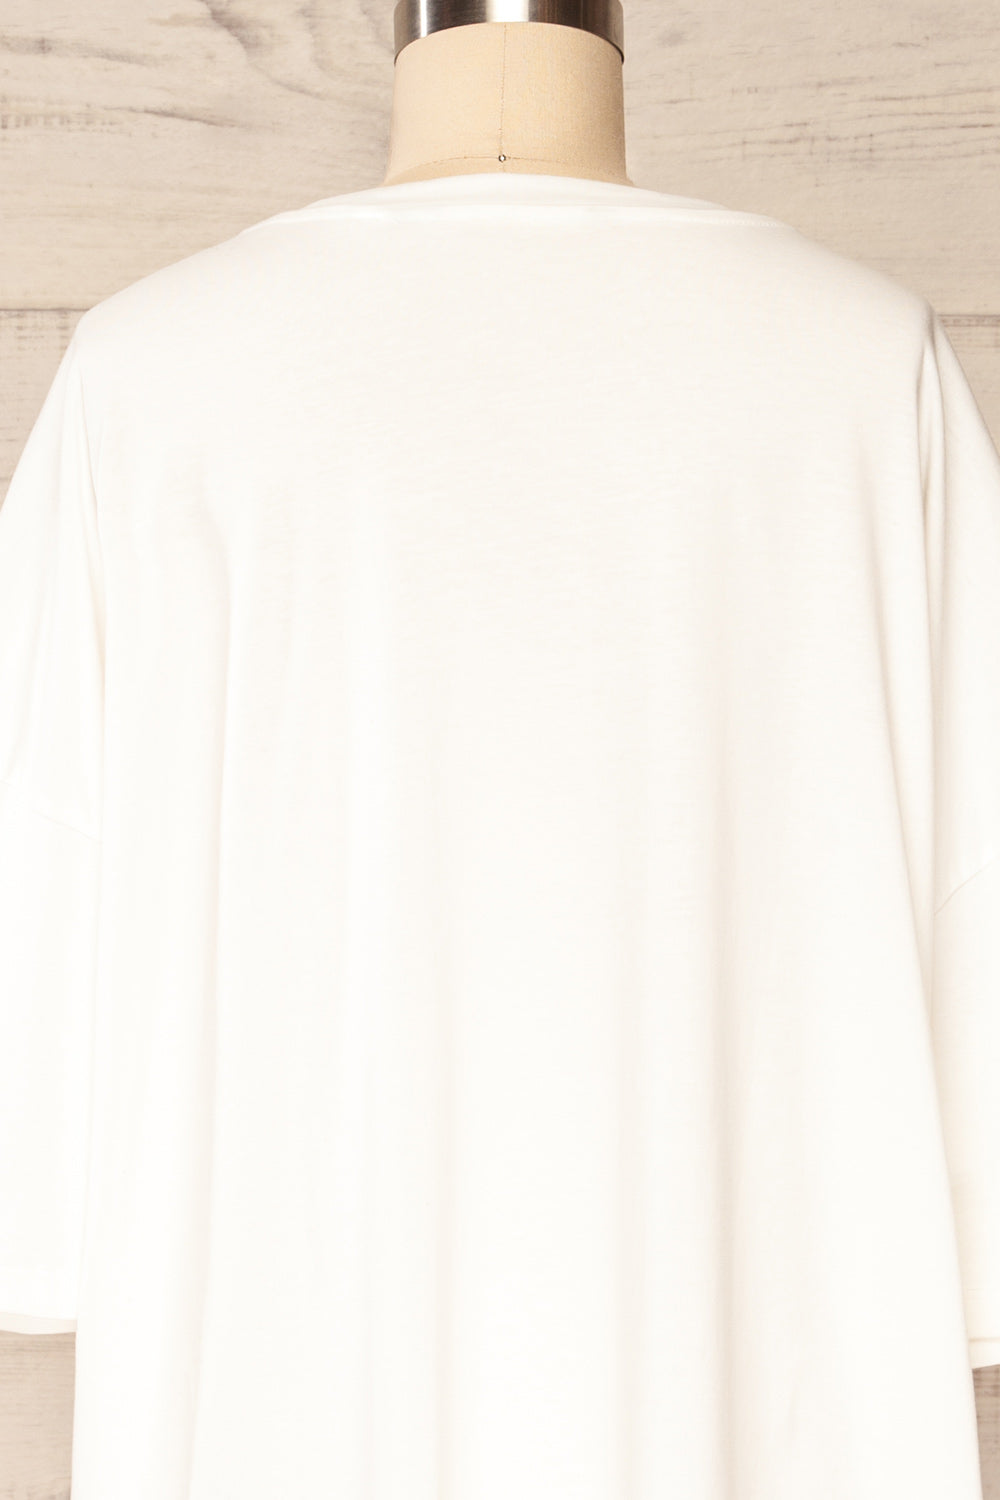 Vasto White Oversized T-Shirt | La petite garçonne back close up